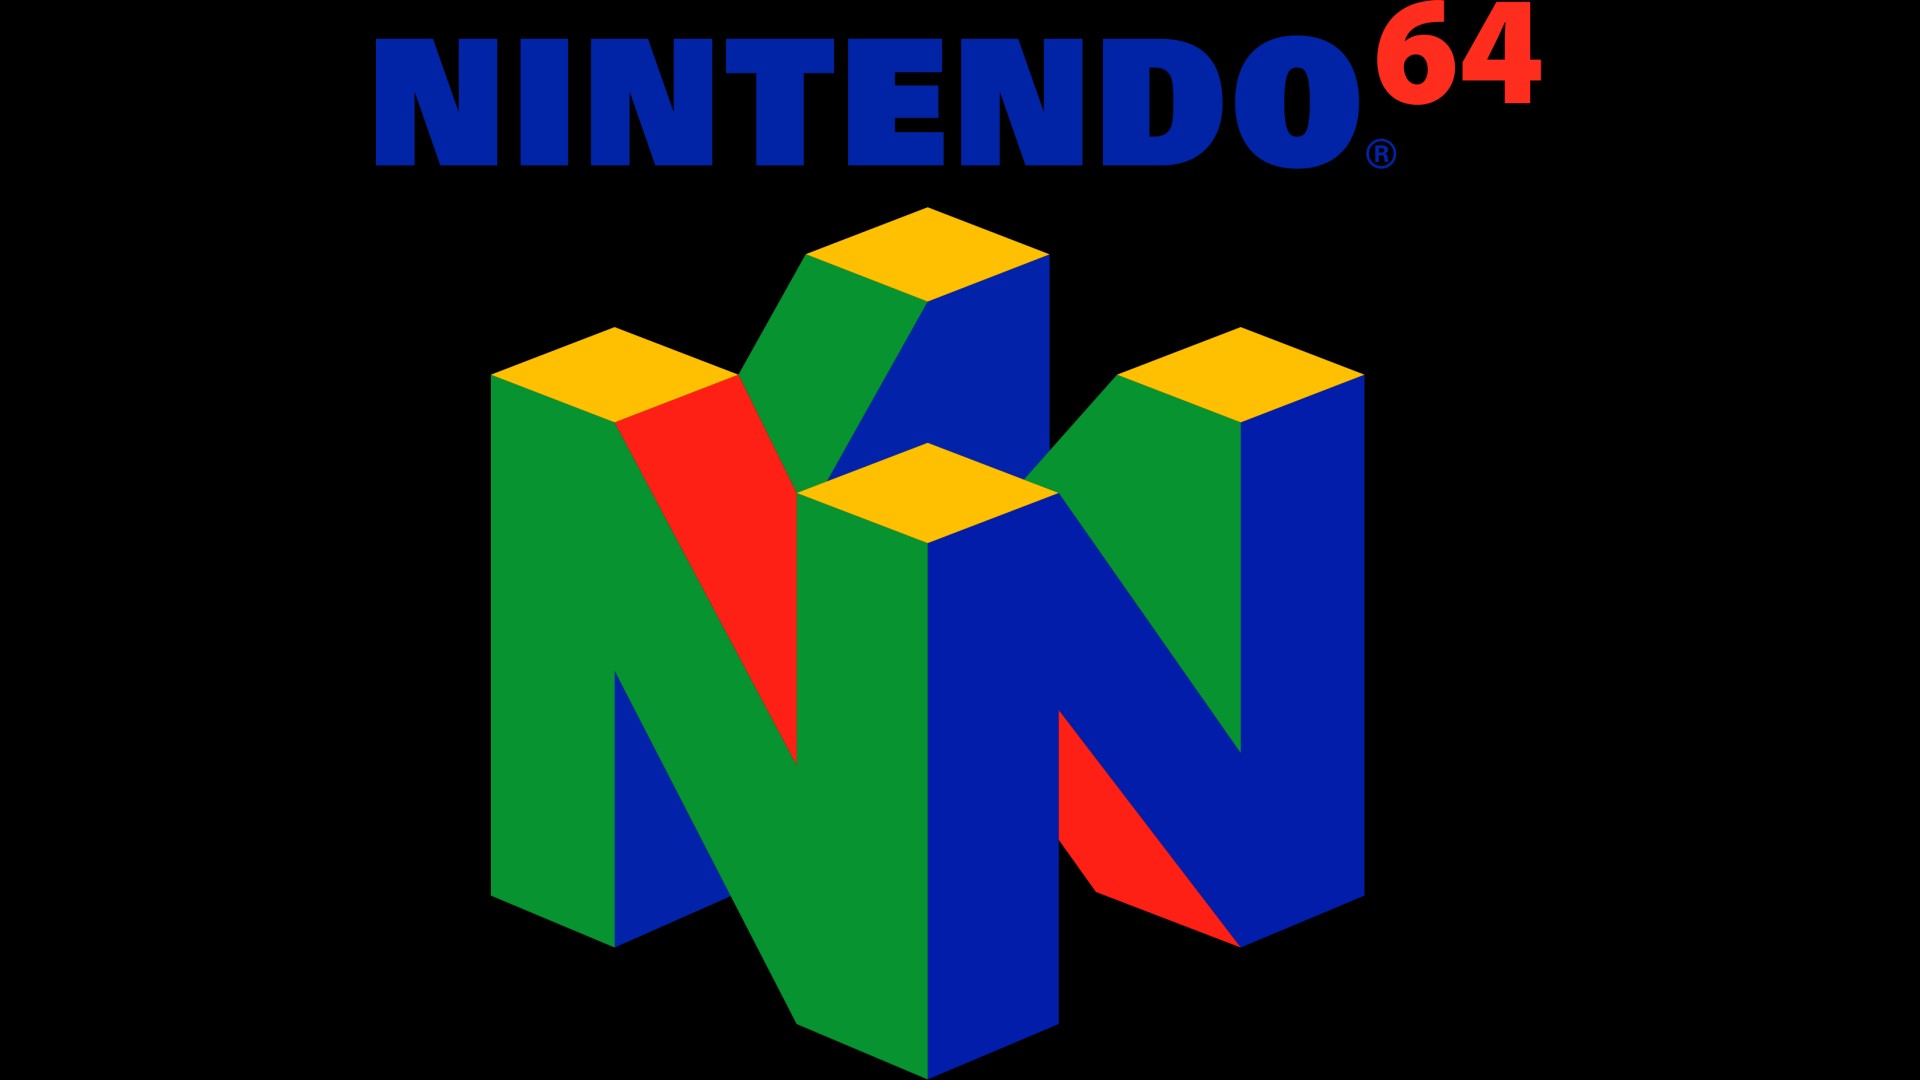 n64 Logo wallpaper | 1920x1080 | #27889